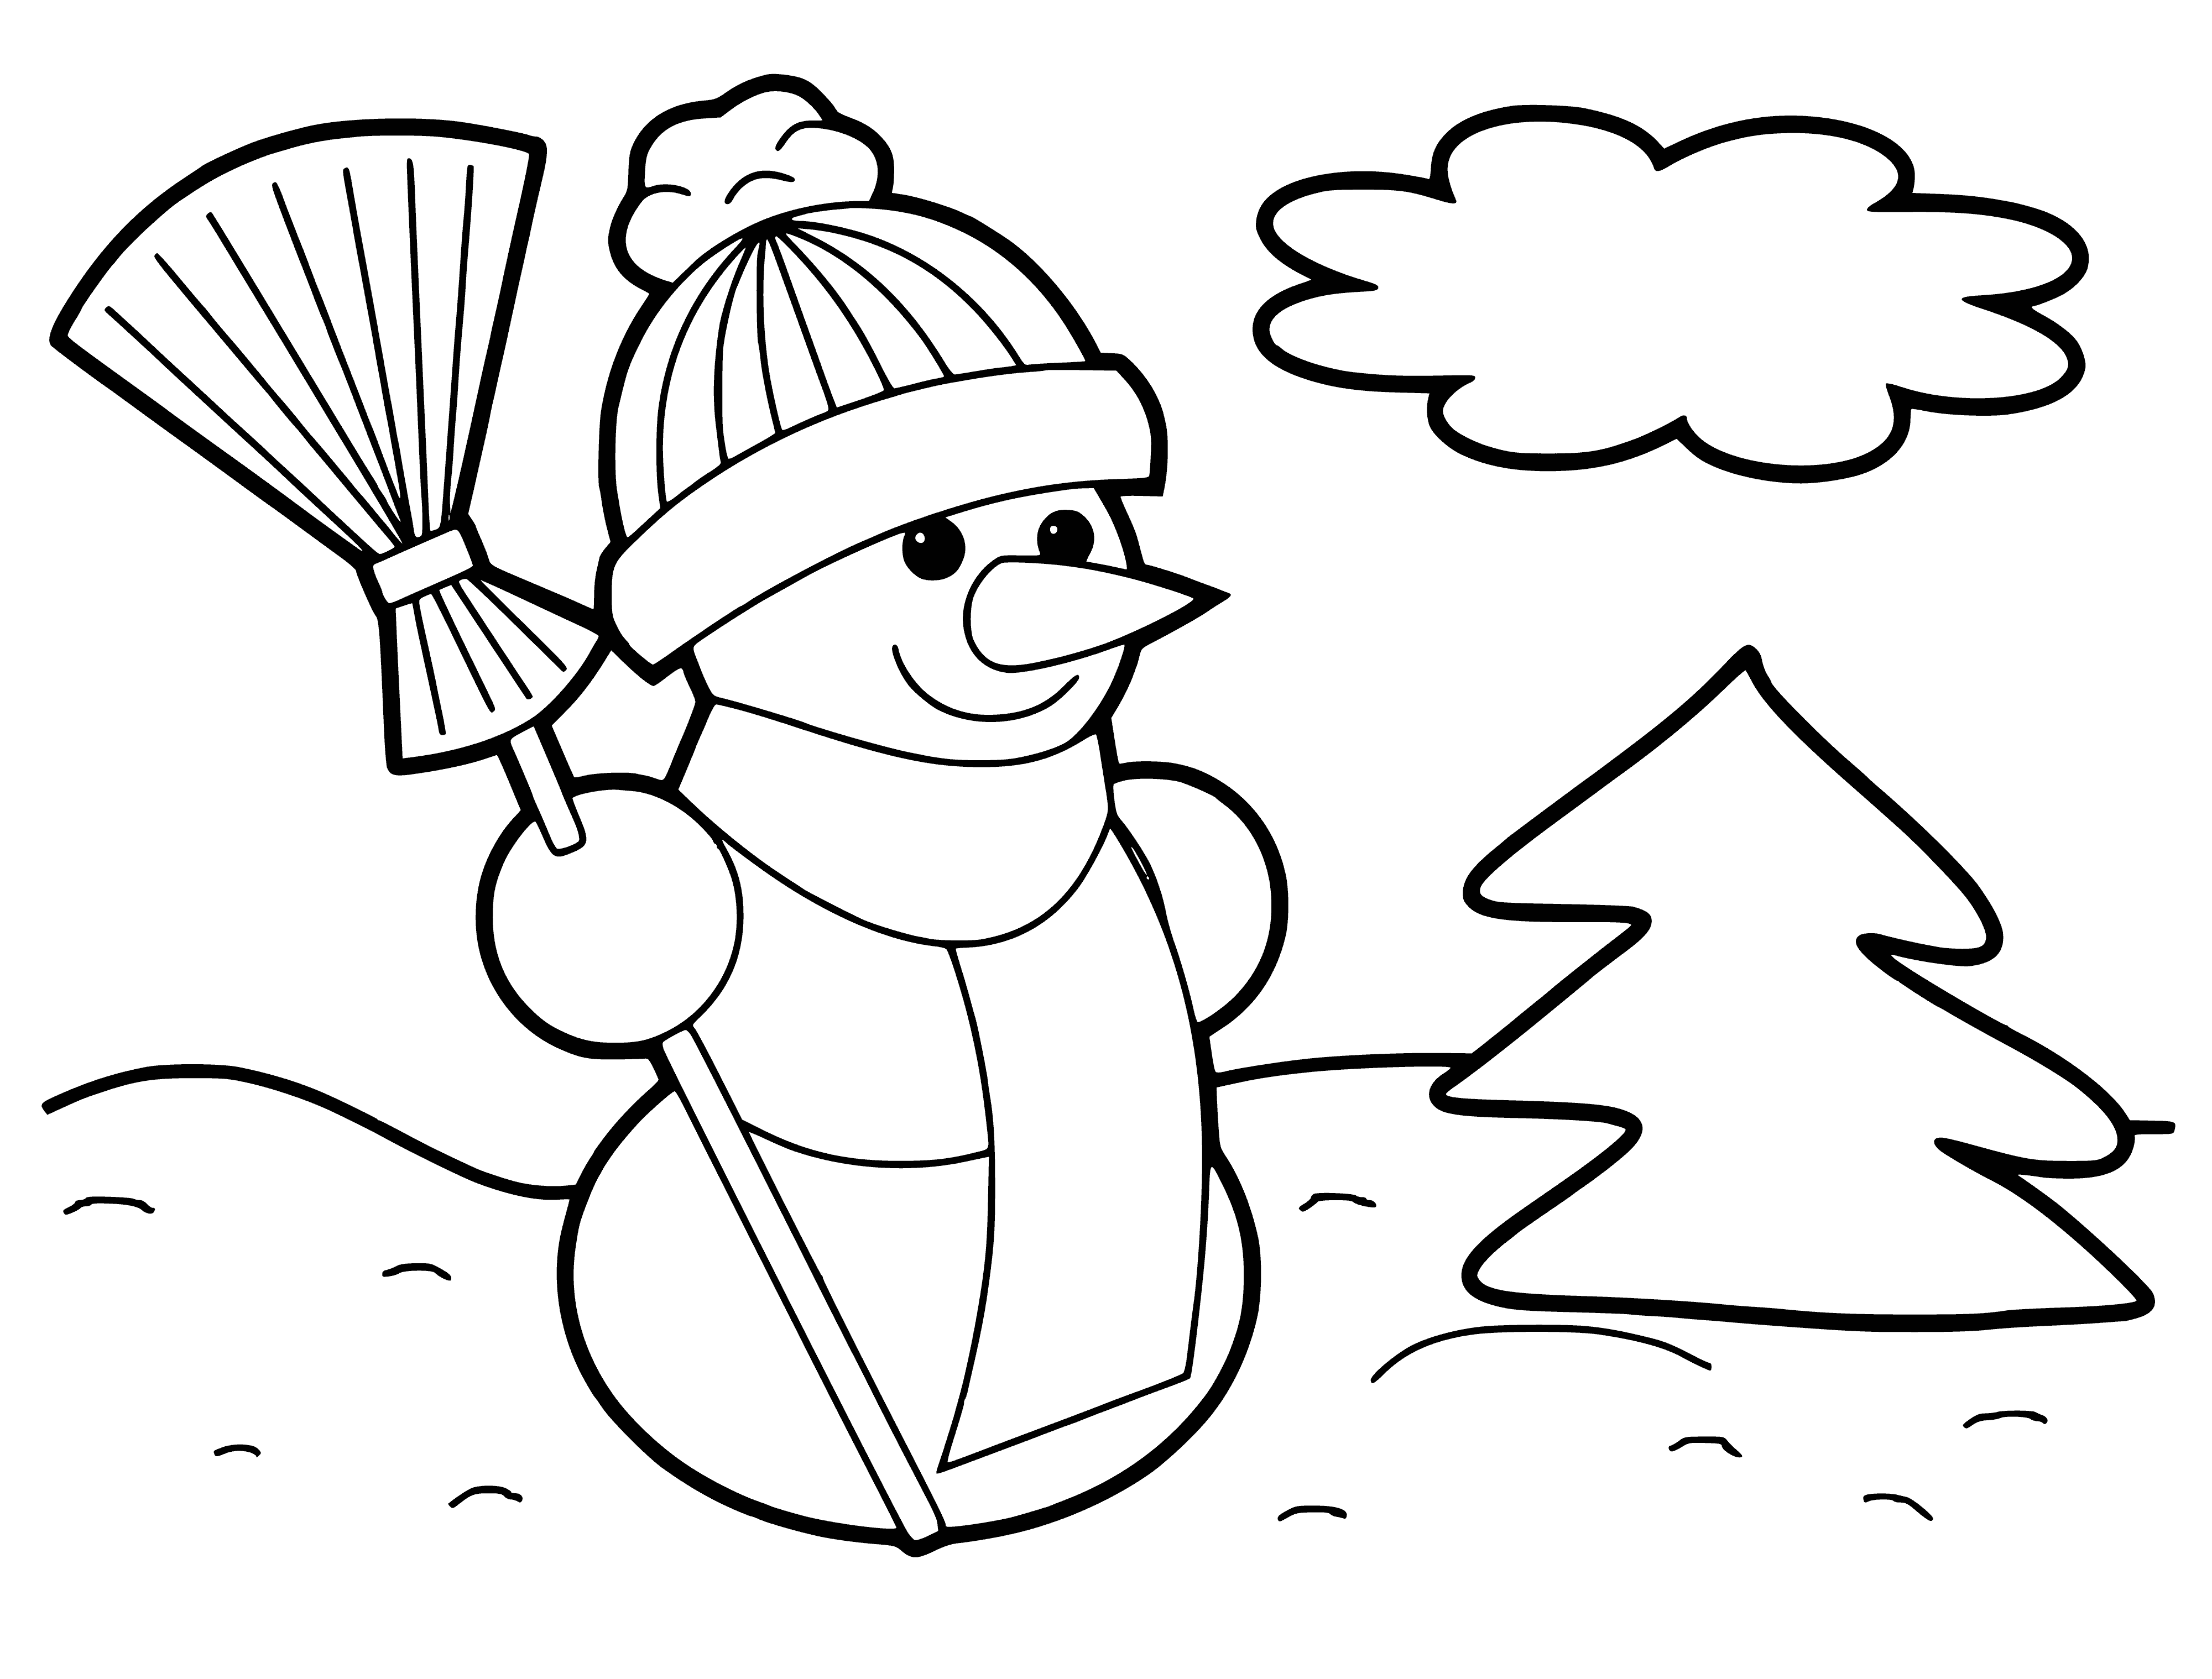 Тема зима 4 5 лет. Снеговик раскраска. Снеговик раскраска для детей. Сон раскраска. Новогодняя раскраска для малышек.